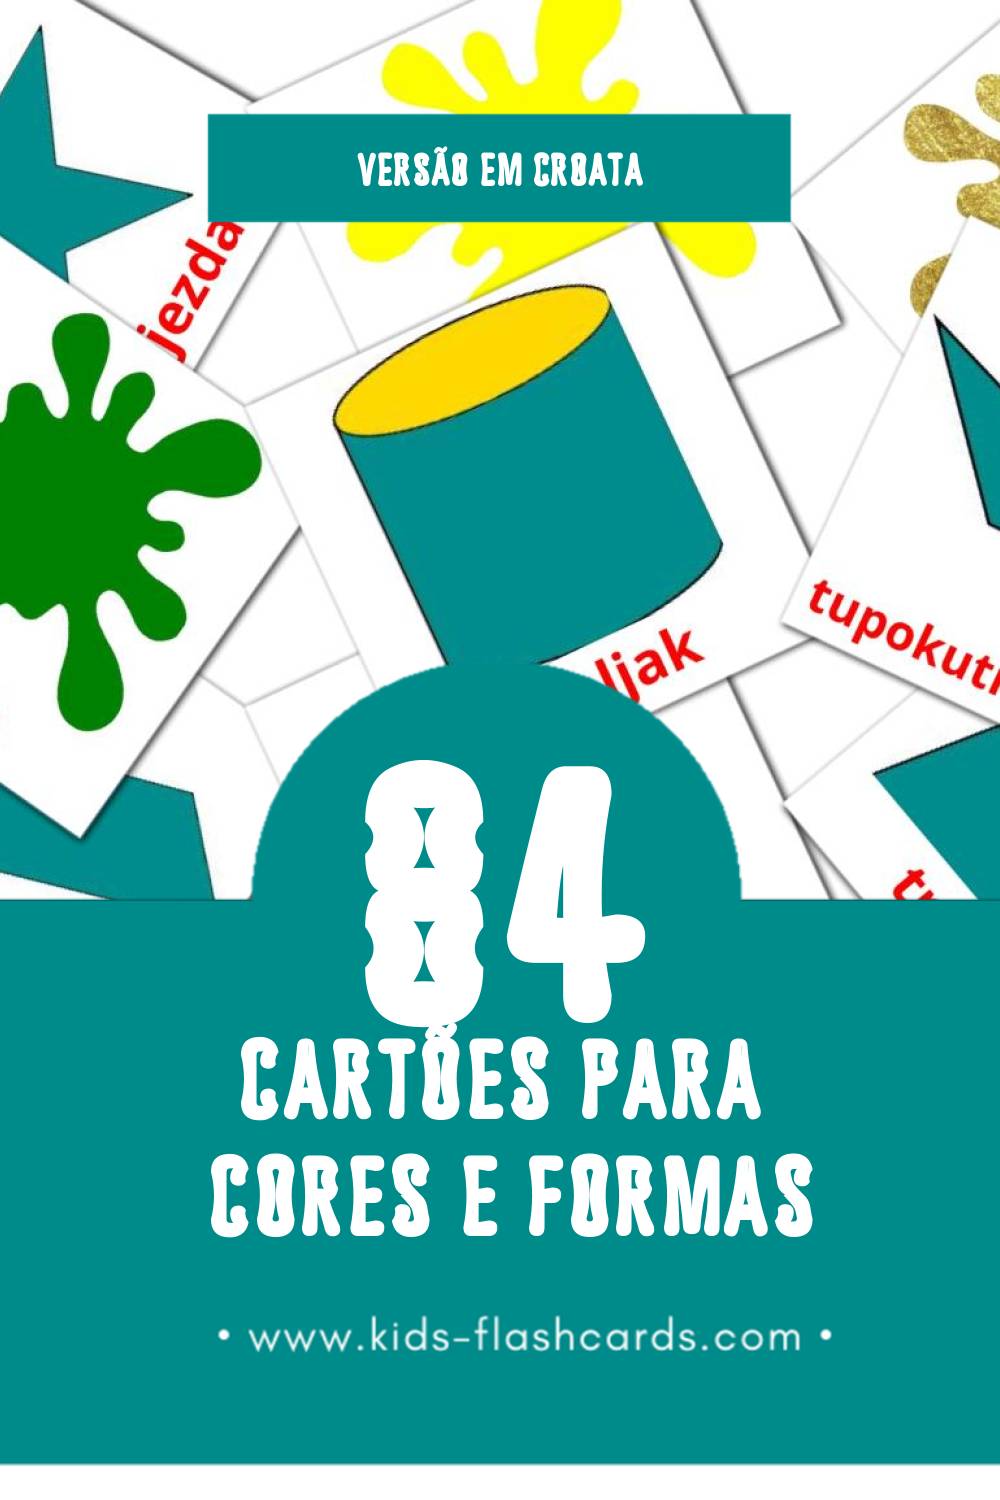 Flashcards de Boje i oblici Visuais para Toddlers (84 cartões em Croata)